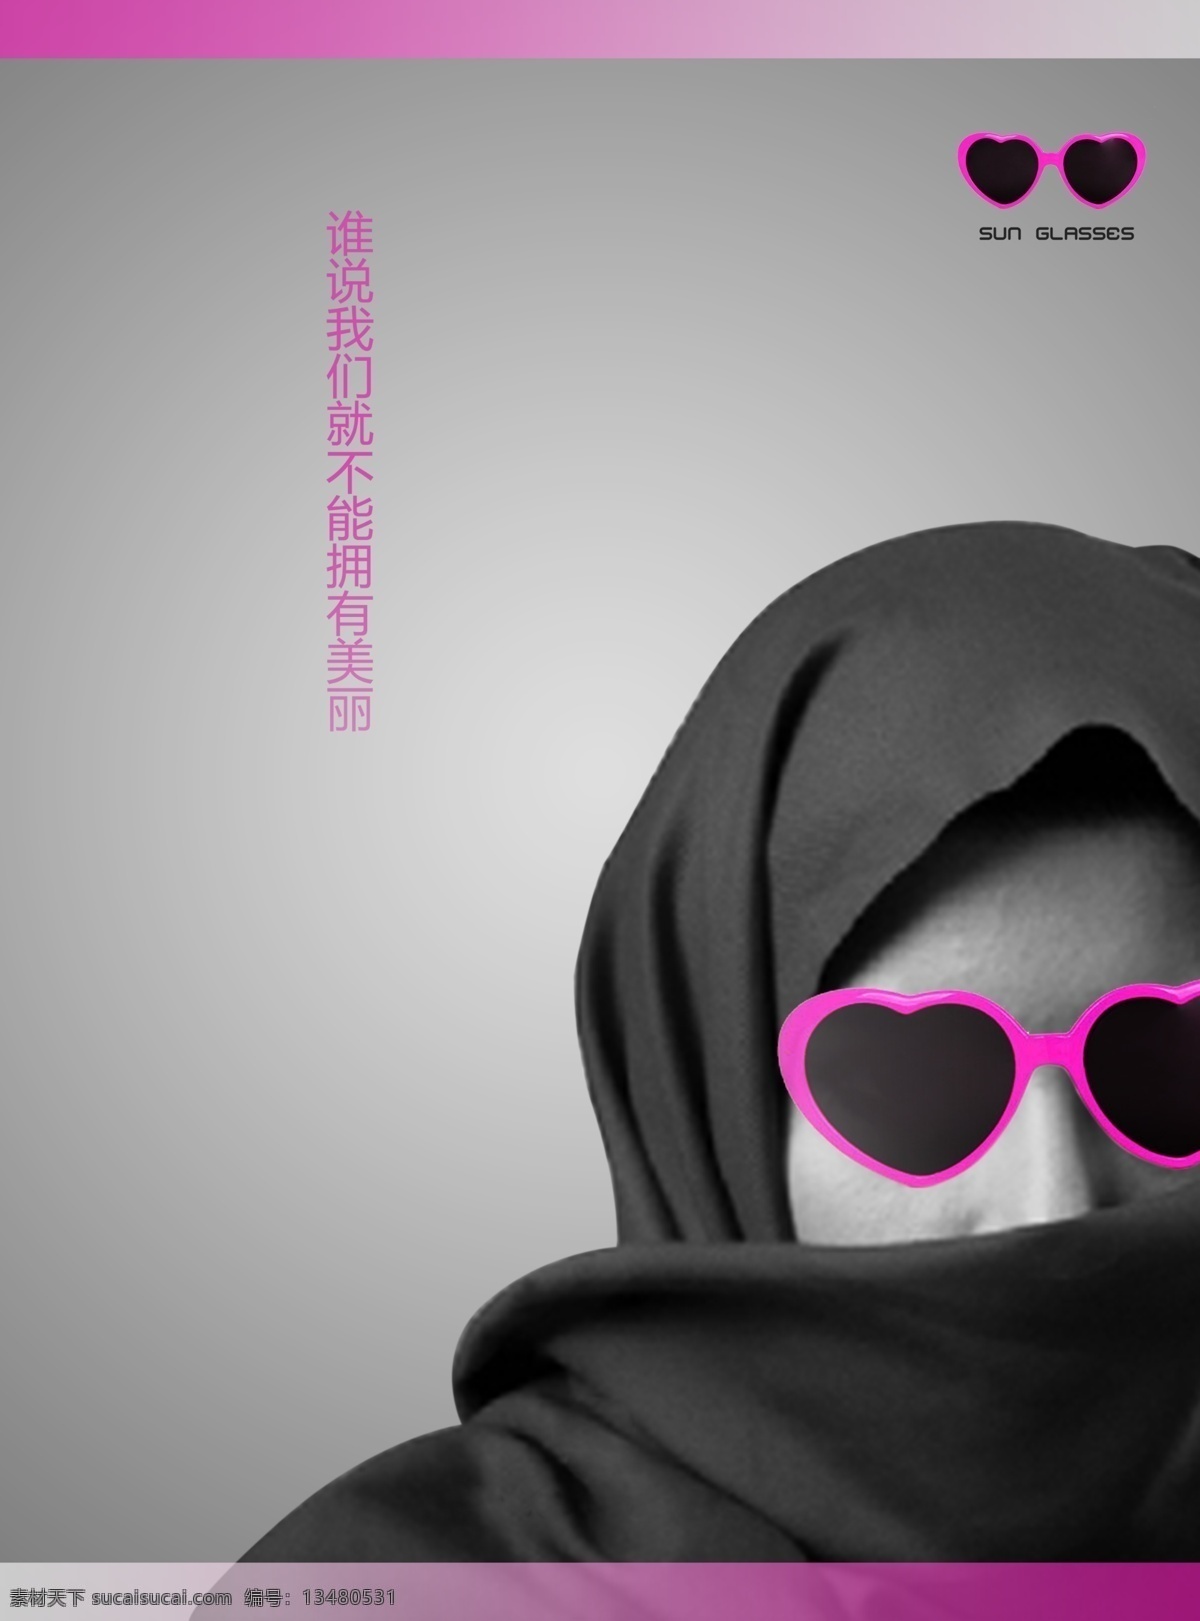 创意 感觉 广告设计模板 女人 眼镜 眼镜海报 伊斯兰 海报 模板下载 宗教 源文件 其他海报设计